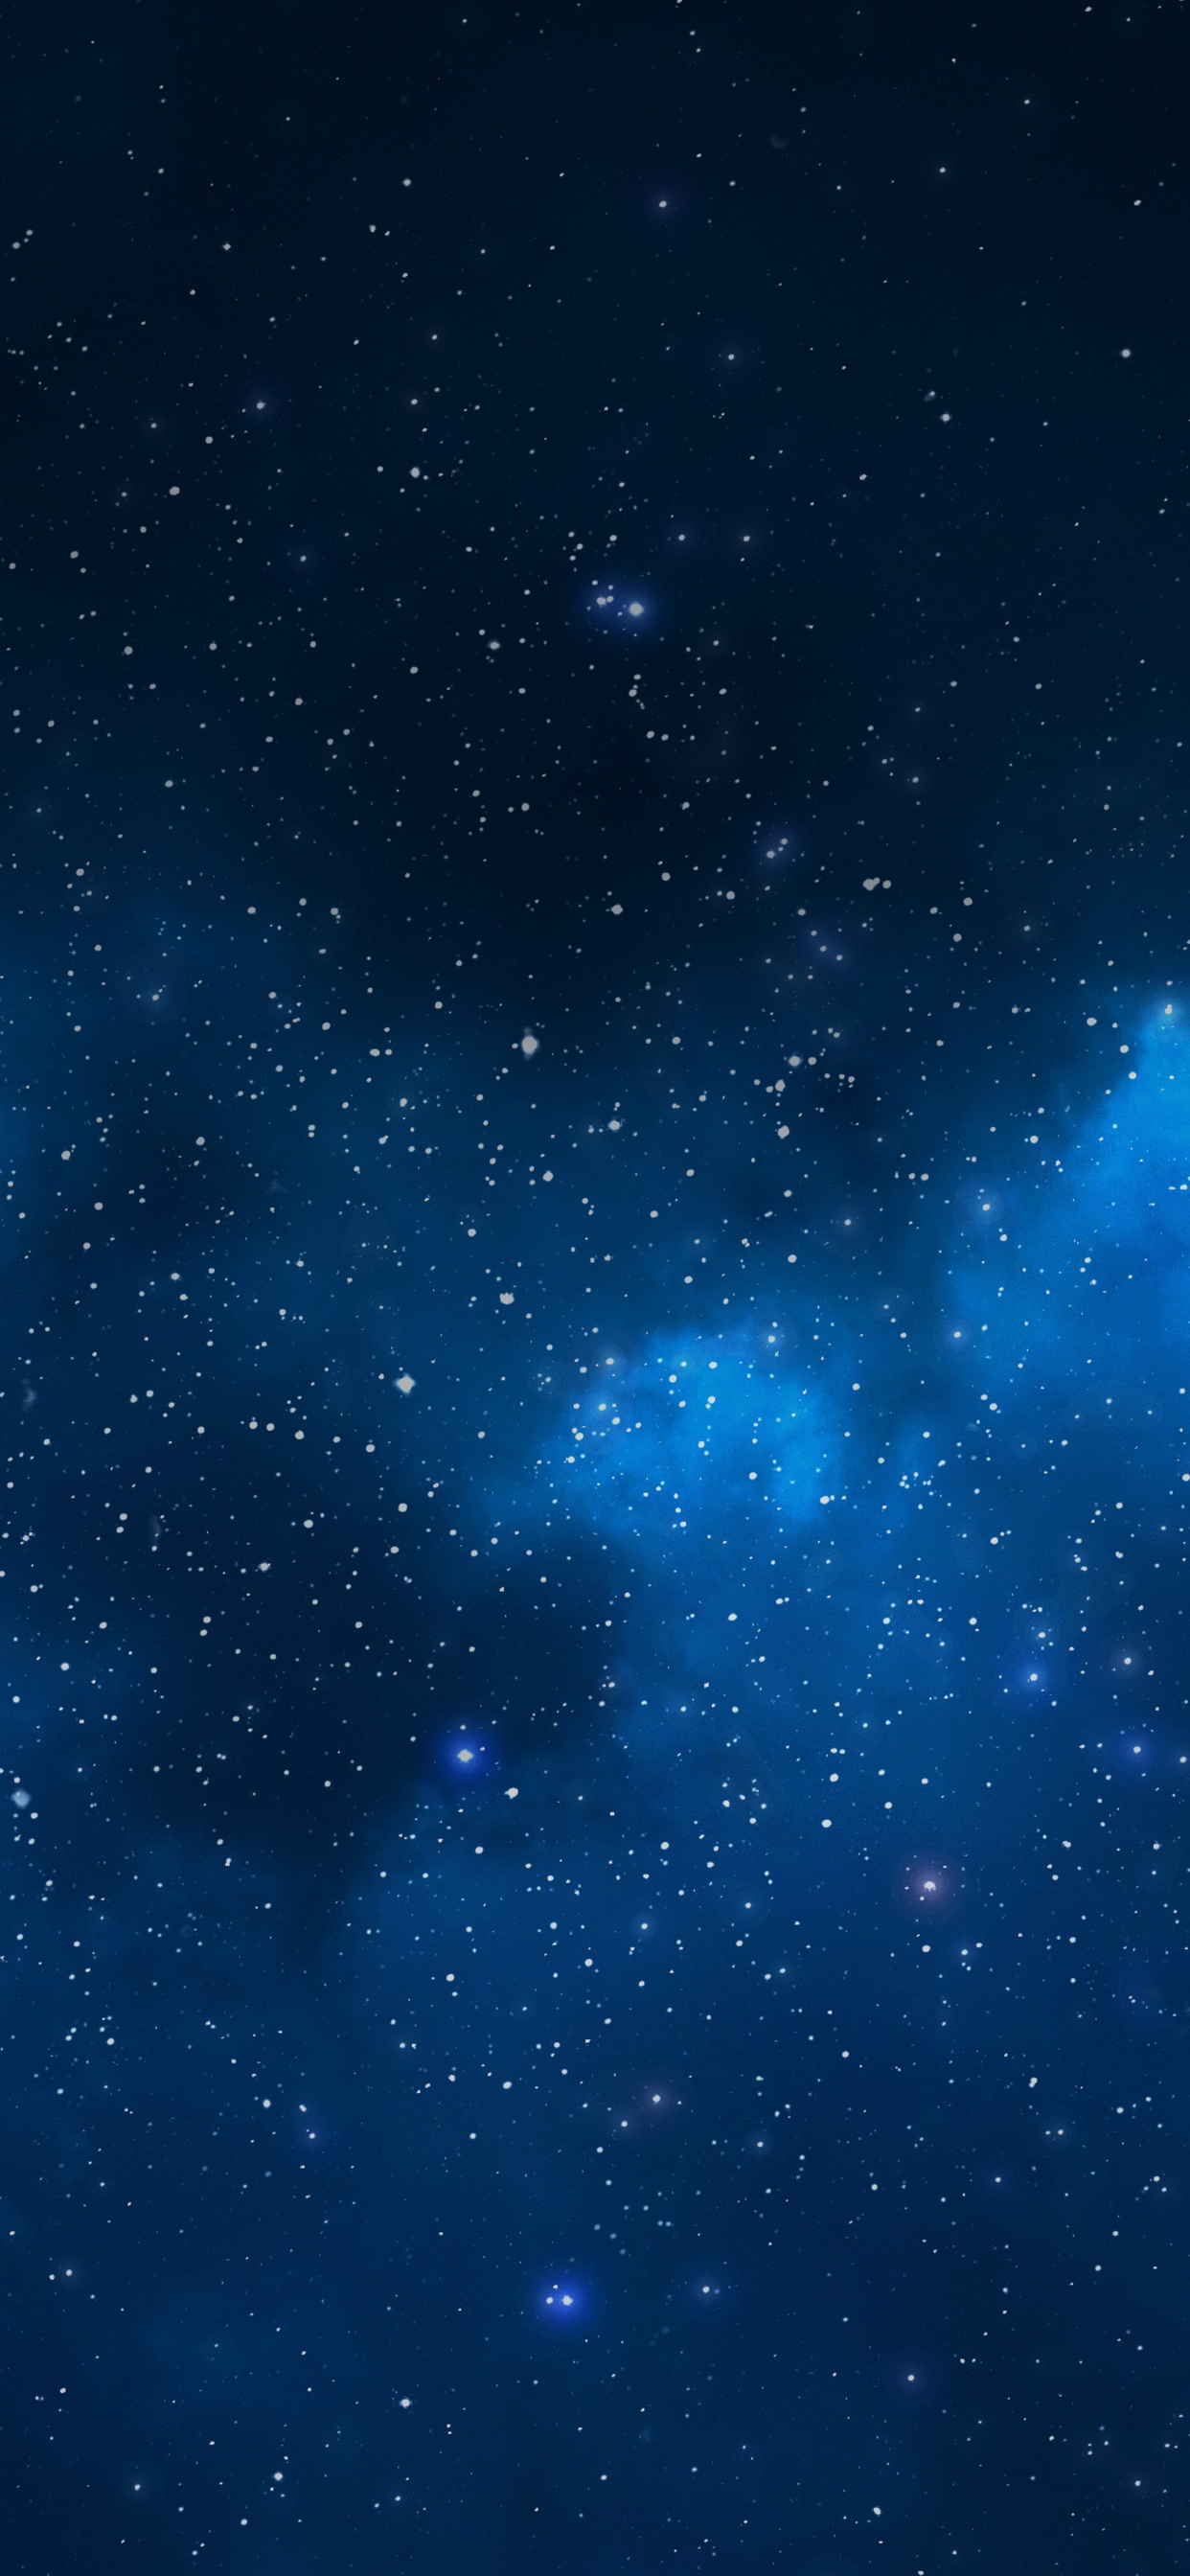 Cielo Estrellado Azul y Blanco. Wallpaper in 1242x2688 Resolution